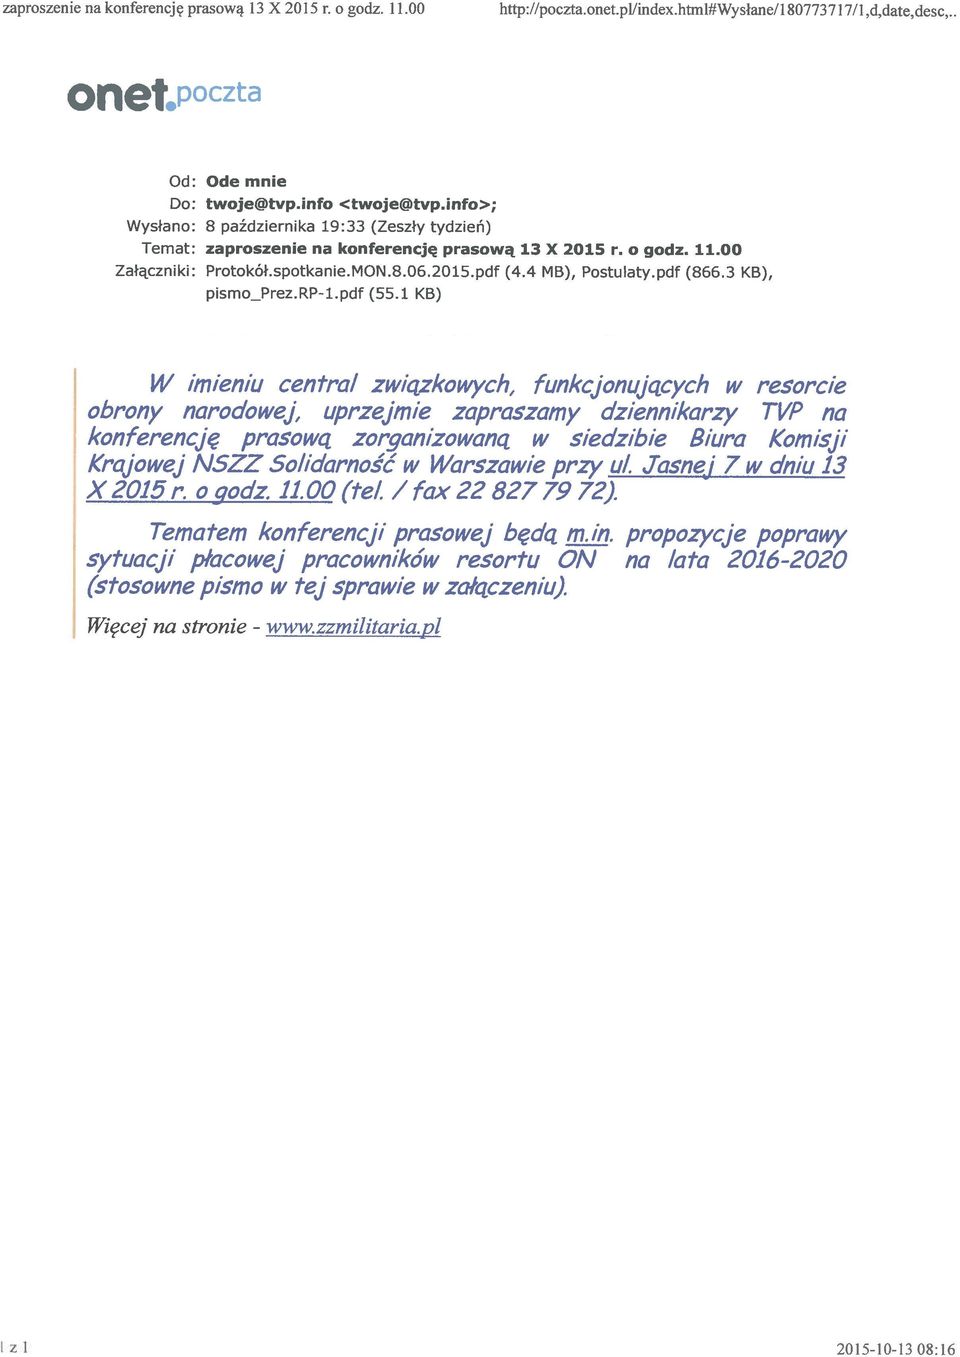 pdf (866.3 KB), pismo_prez.rp-1.pdf (55.